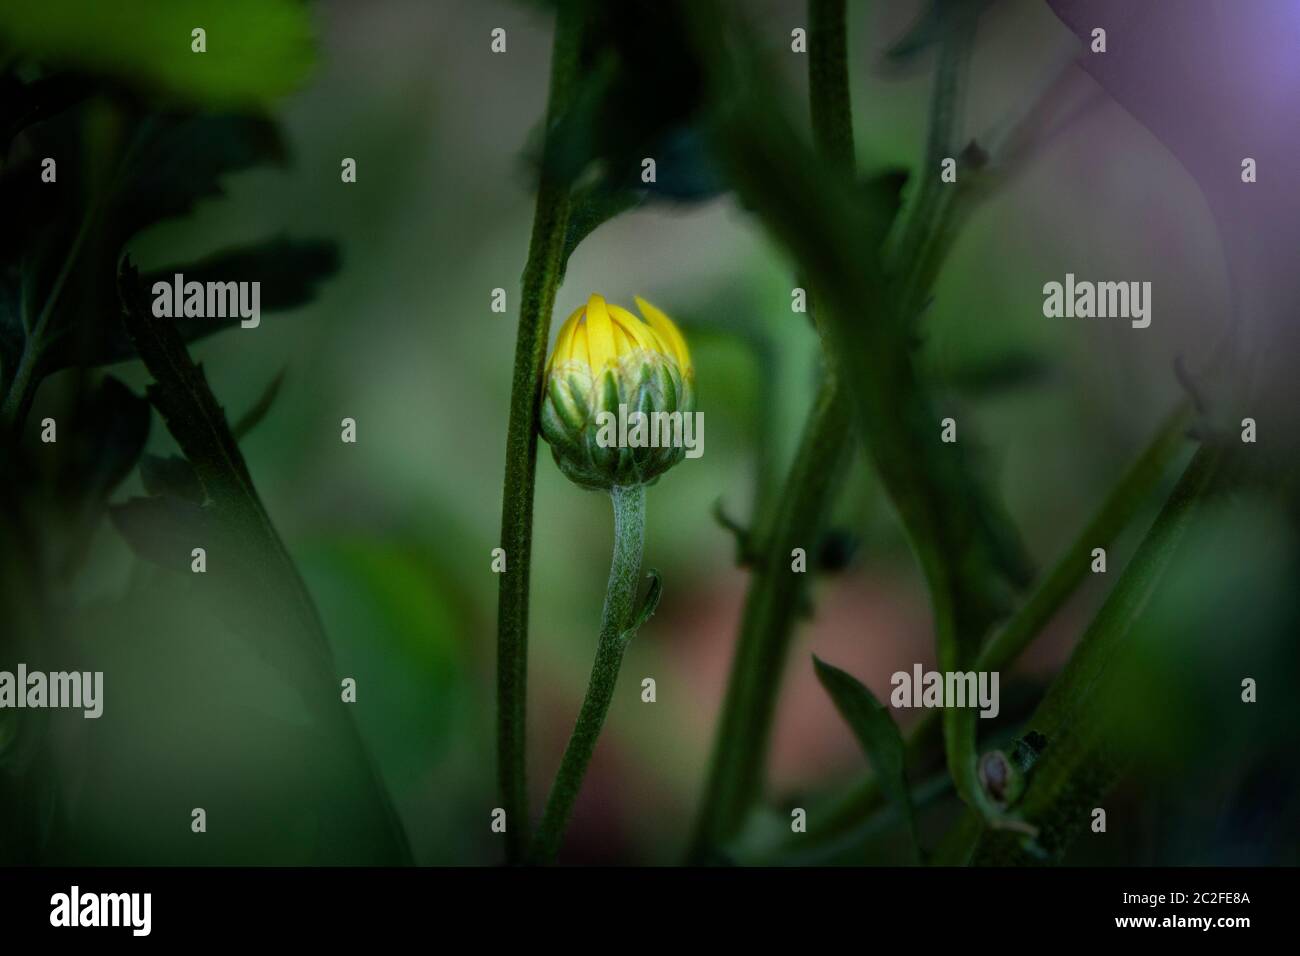 LB00183-00...WASHINGTON - LensBaby image of a daisy flower bud. Stock Photo